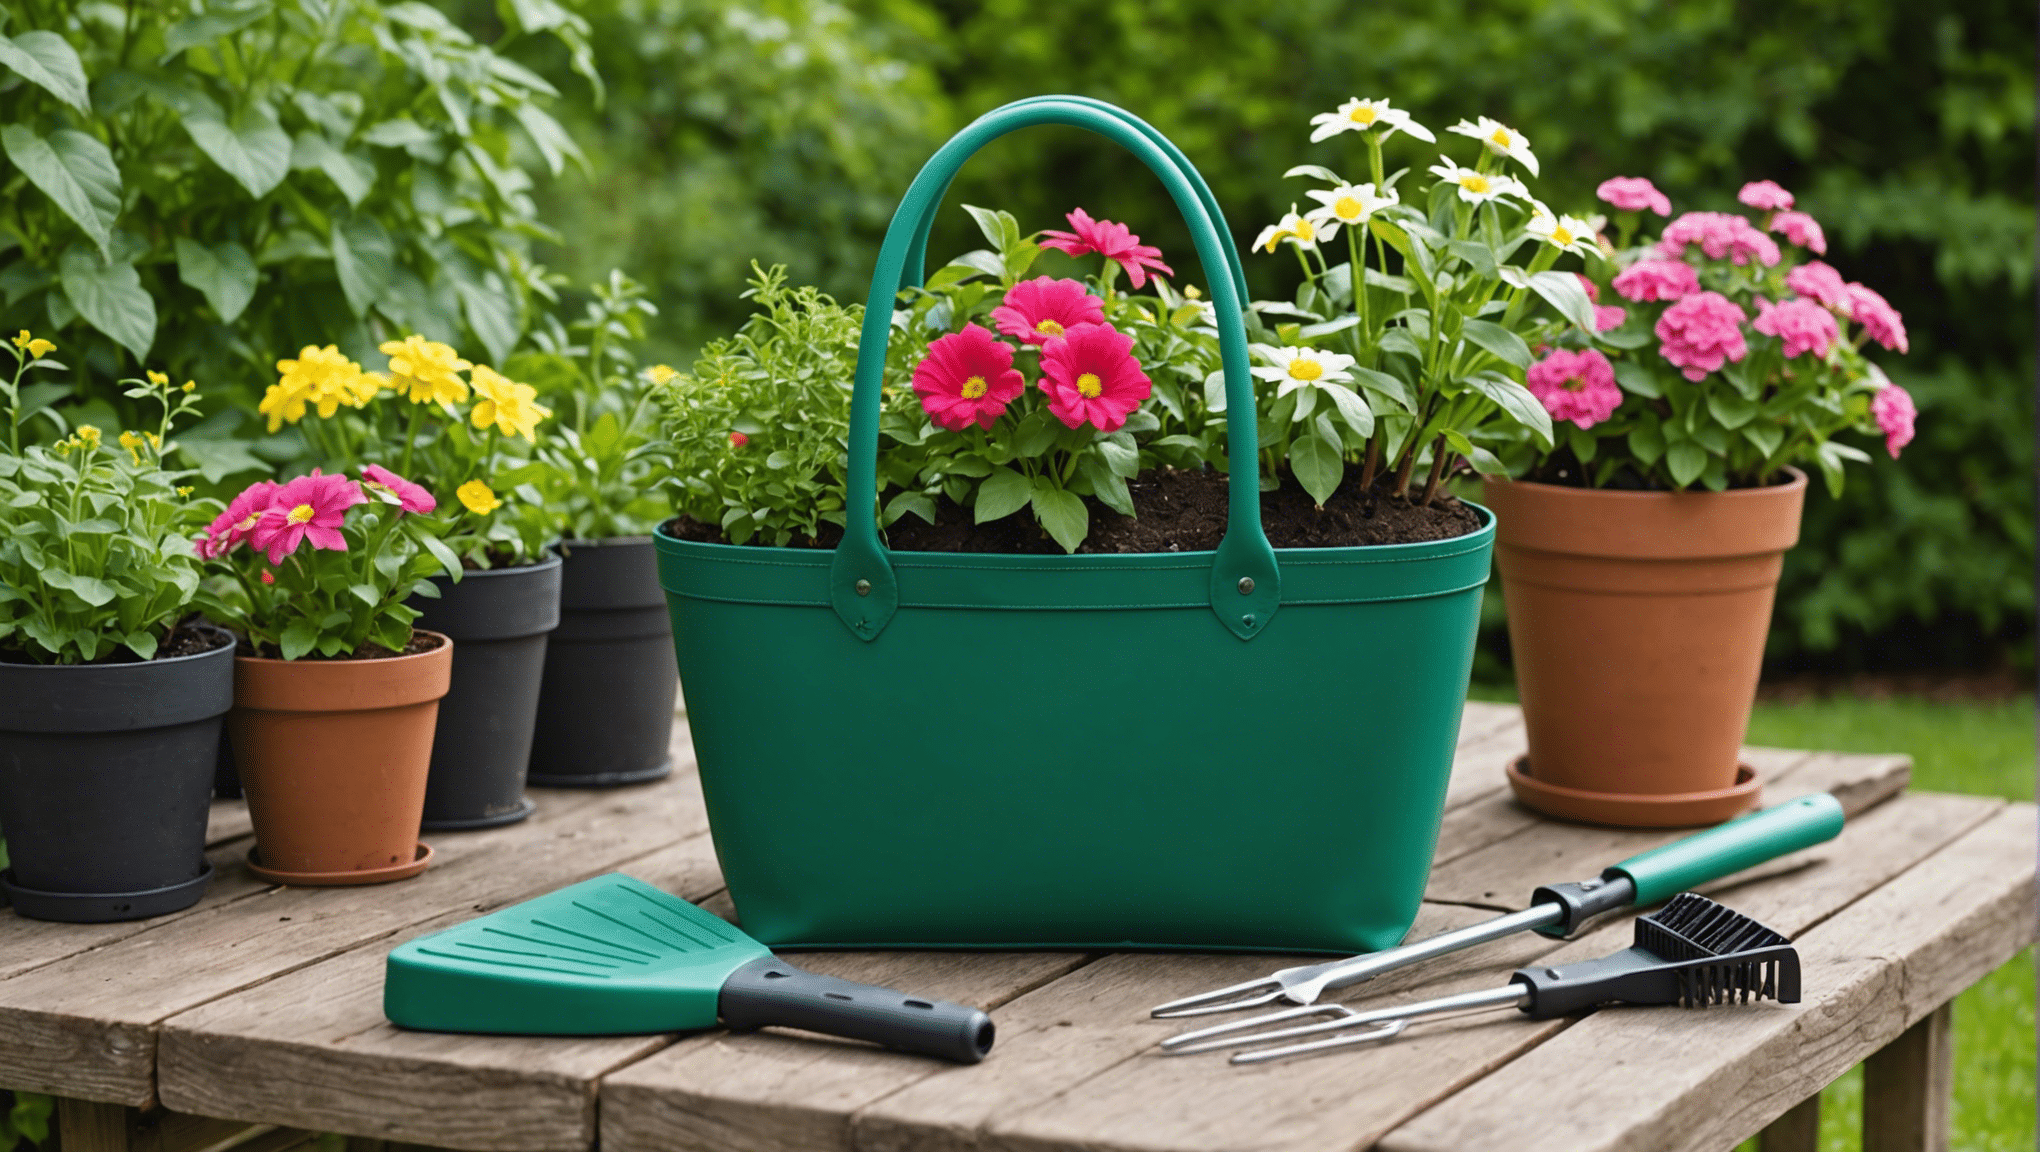 seznamte se s nezbytnými funkcemi zahradní taštičky a najděte tu perfektní pro vaše zahradnické potřeby. objevte odolné materiály, dostatek úložného prostoru a pohodlný design pro nádherný zahradní zážitek.